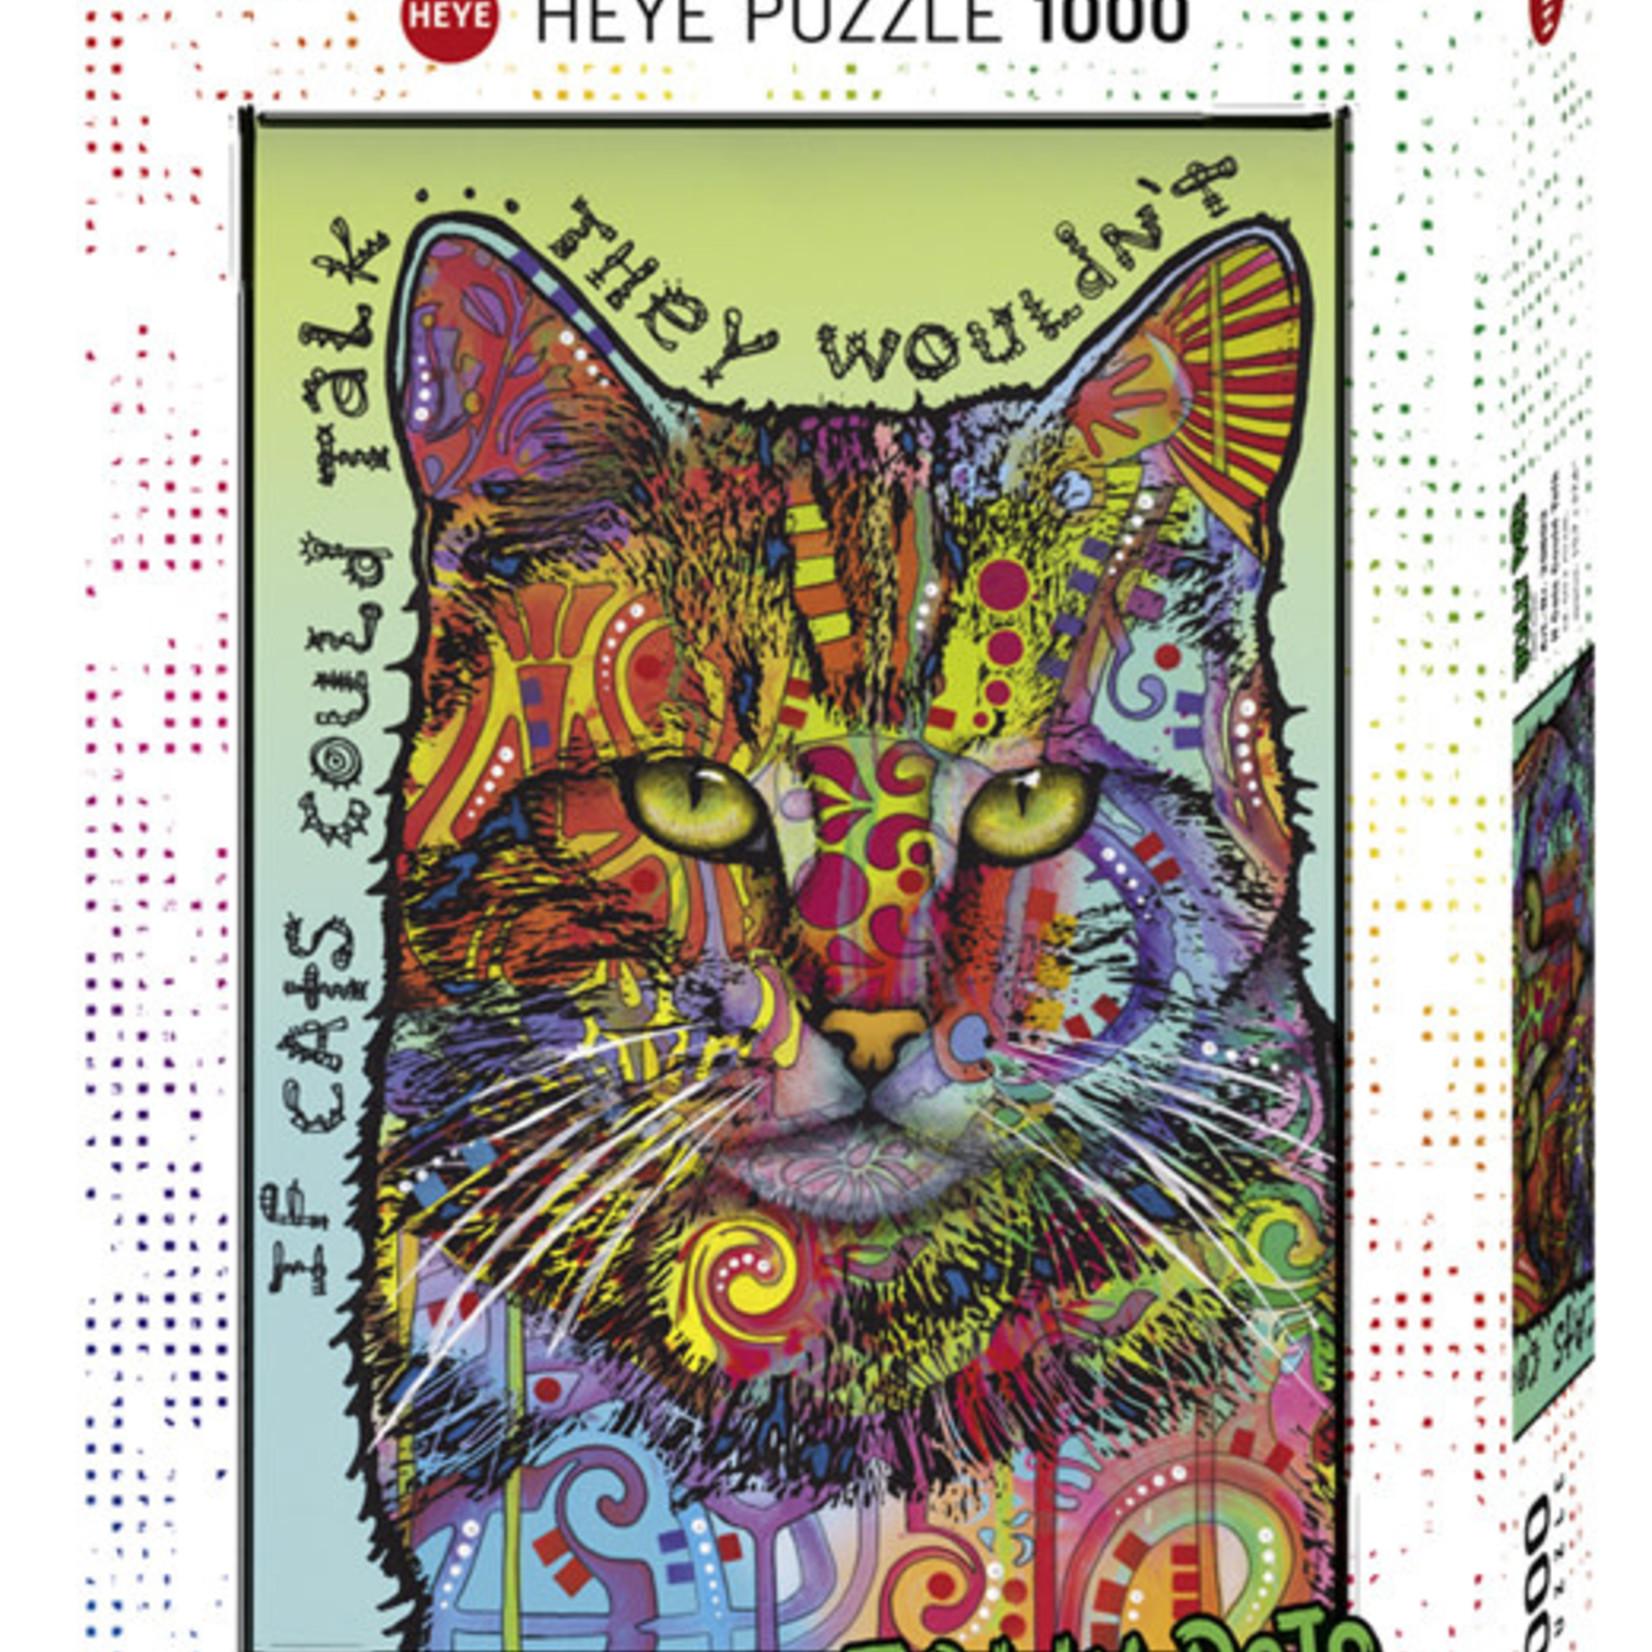 Heye Heye 1000 - Jolly Pets - If Cats Could Talk